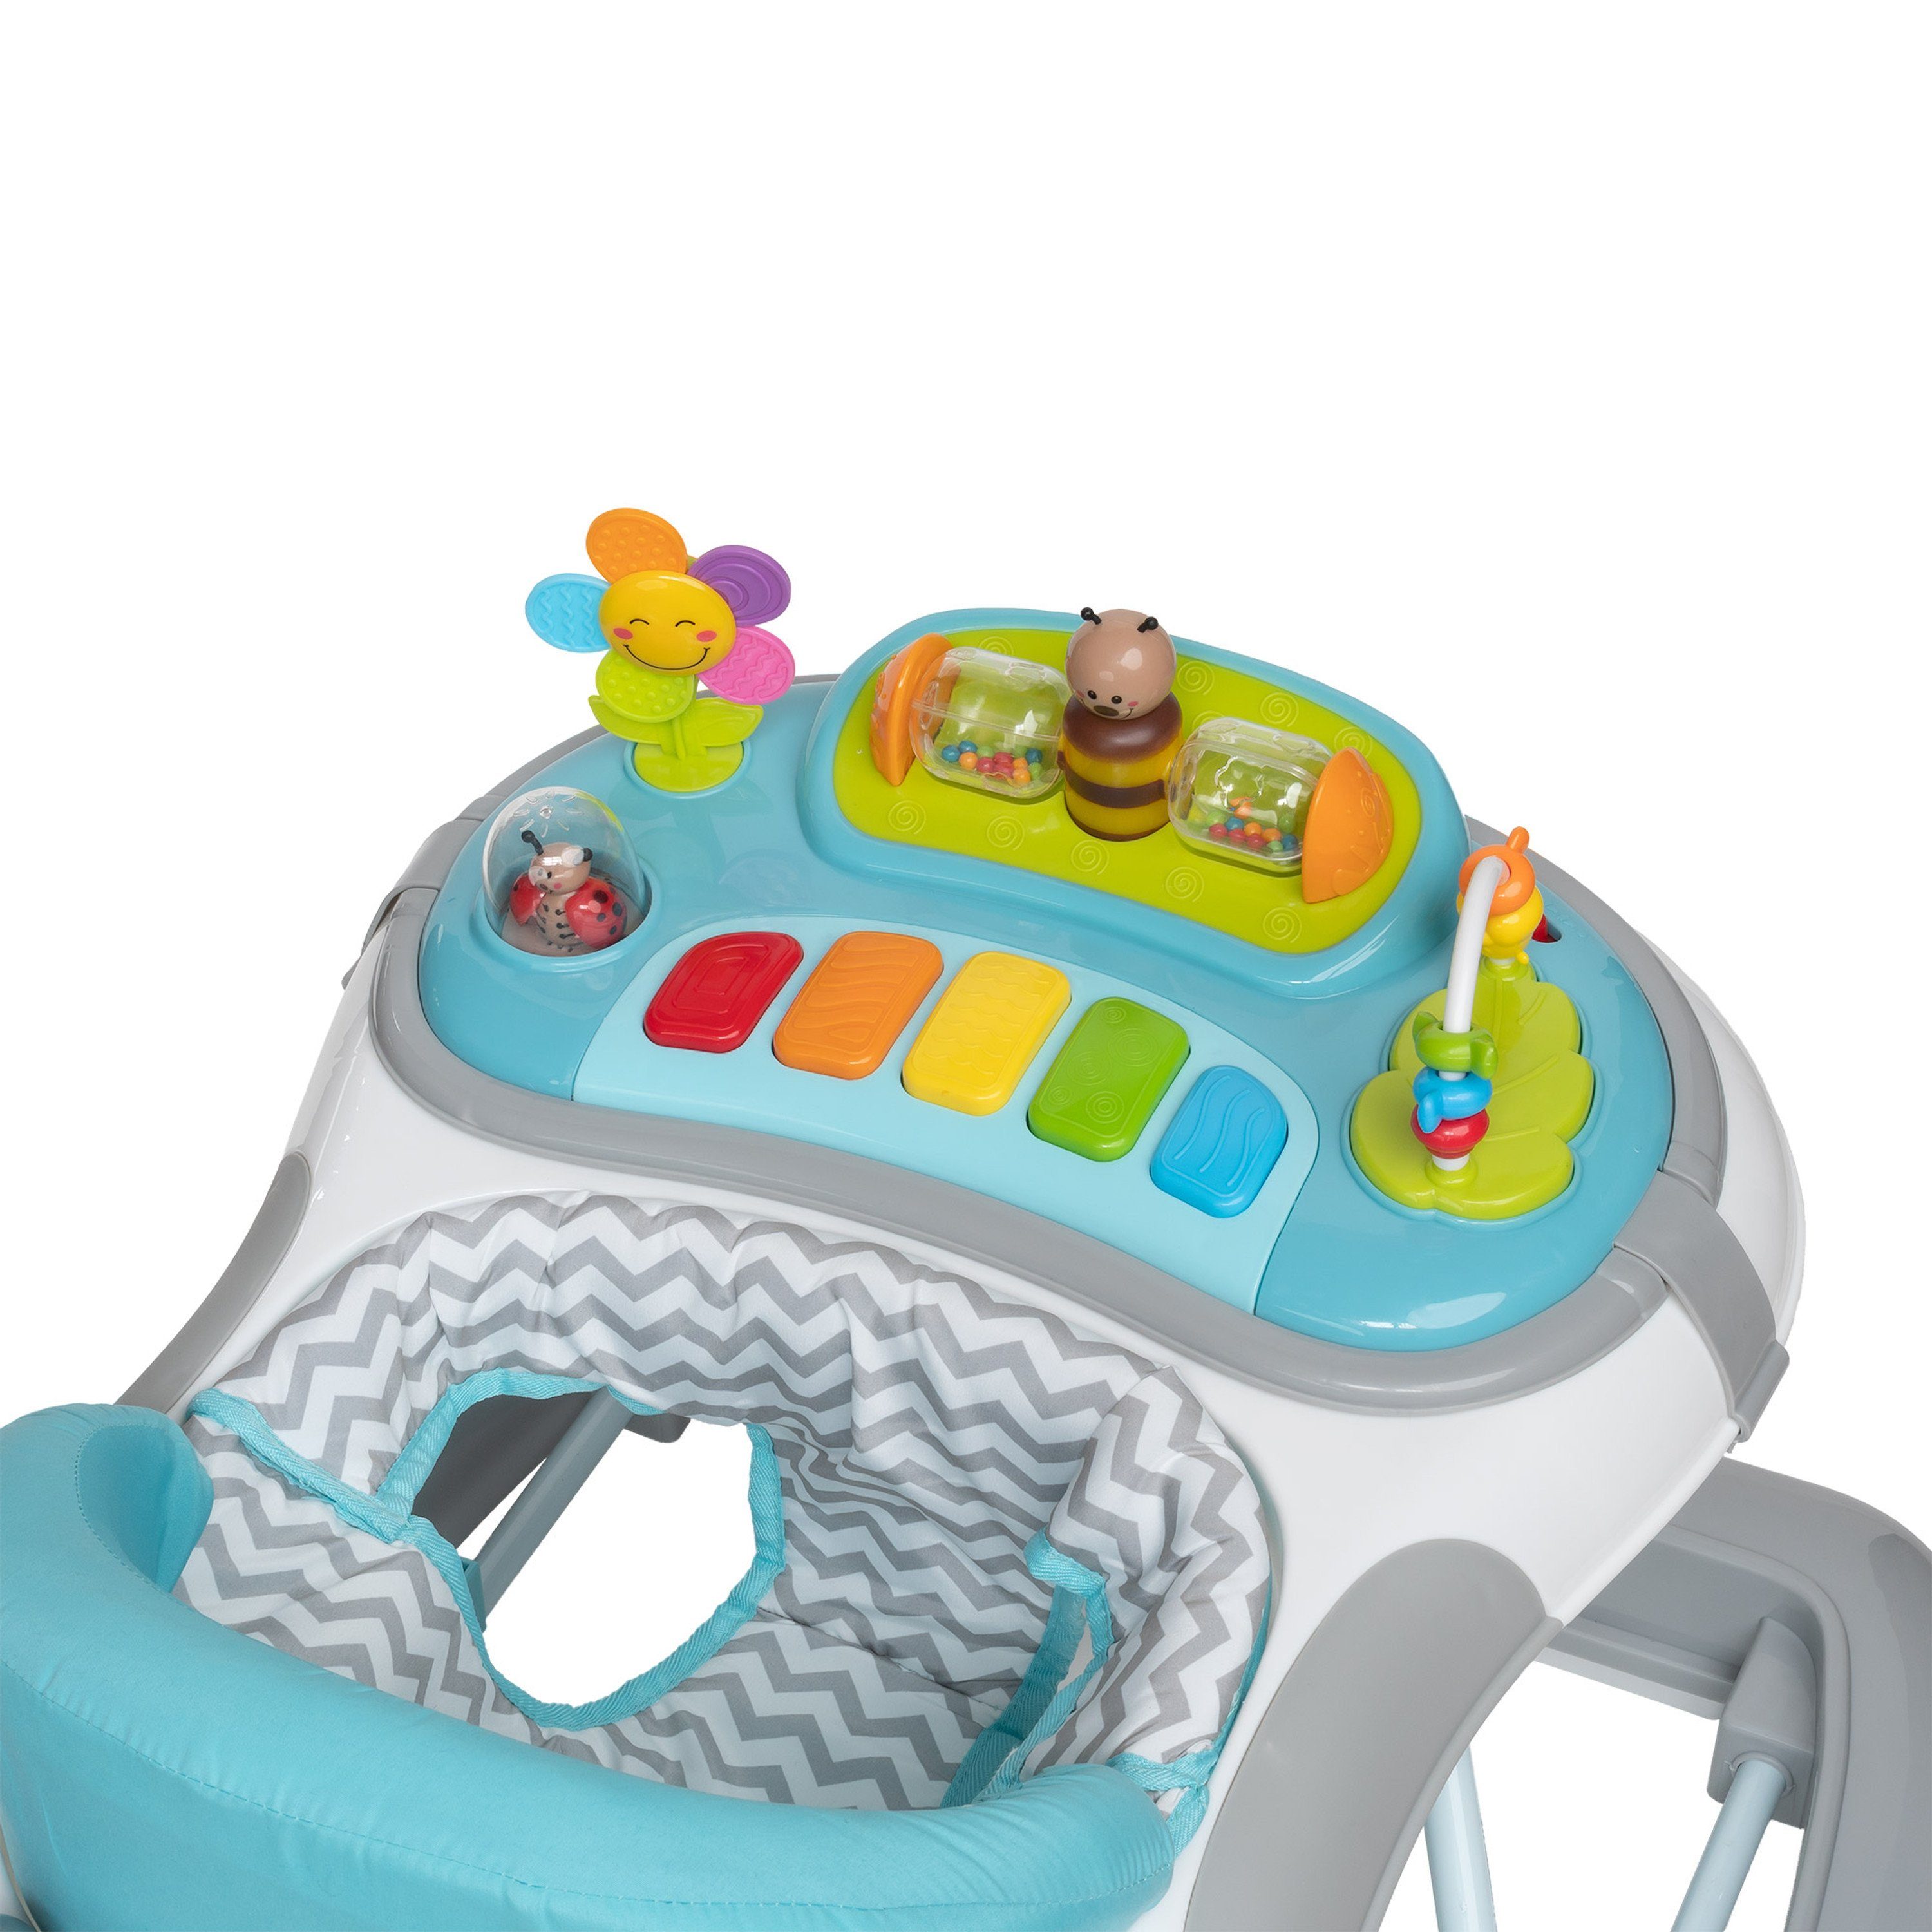 Schaukelfunktion style Mint, Wave Lauflernhilfe Lauflernwagen ib mit Spielelement Babywalker & elektronischem